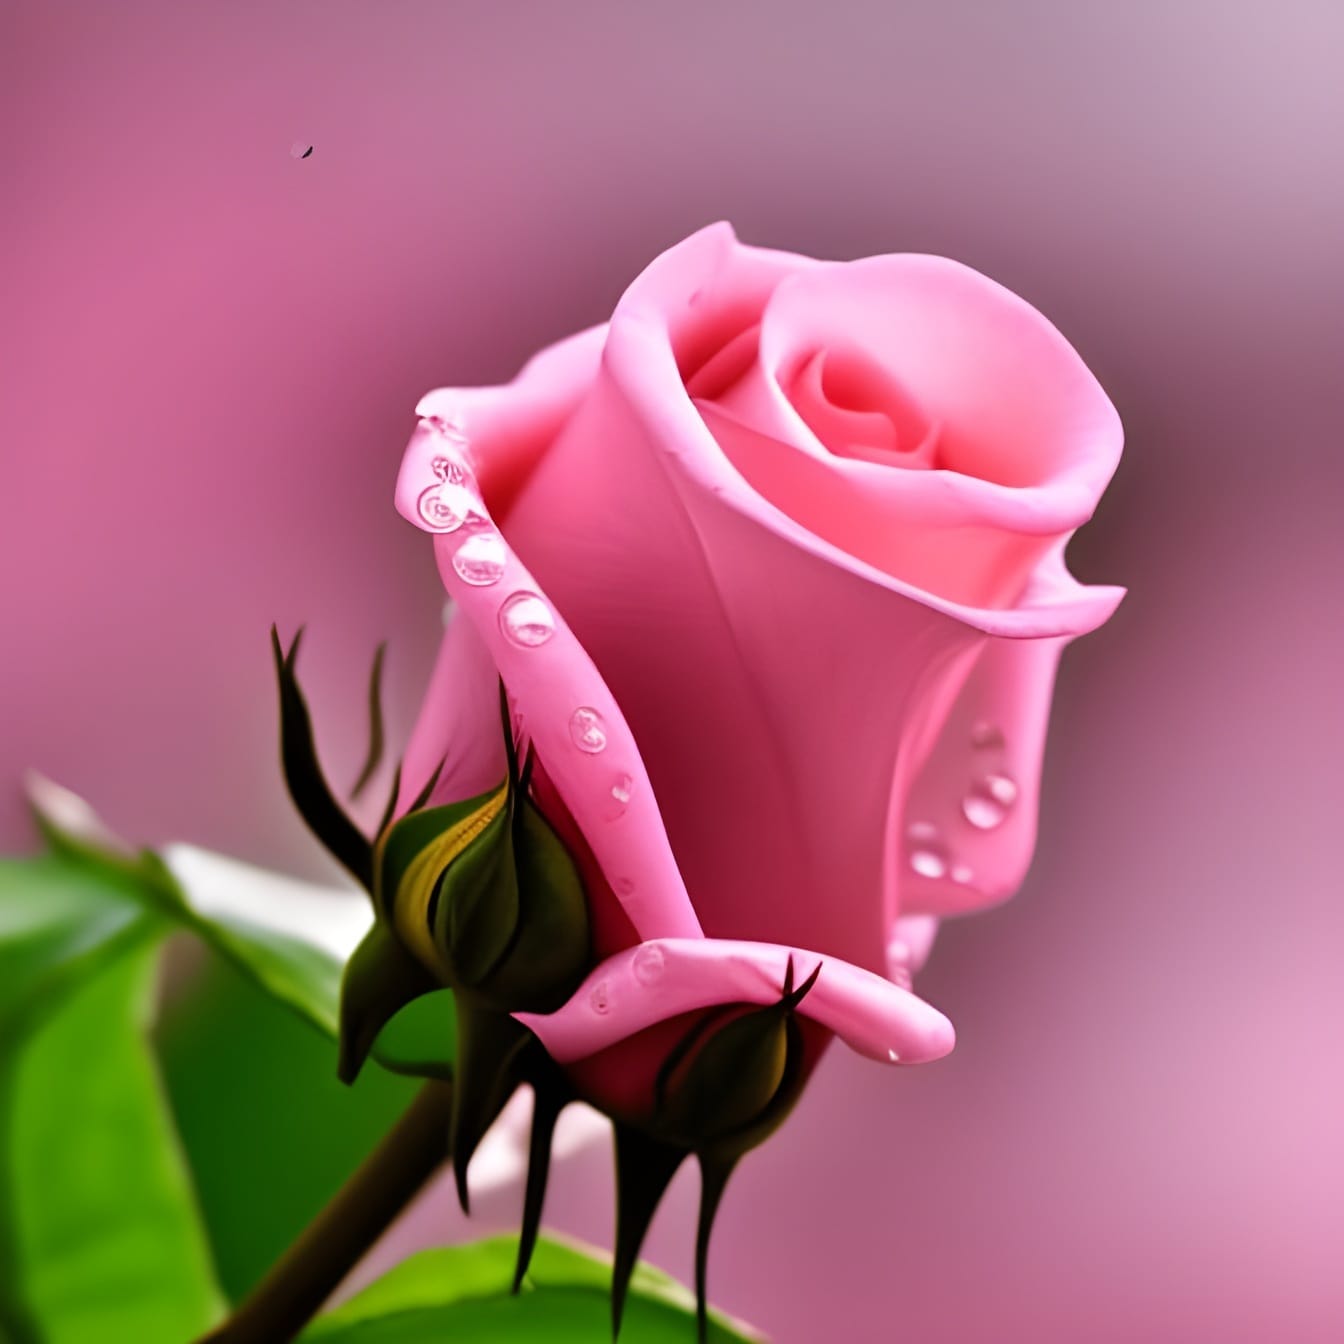 Kuncup mawar merah muda dengan tetesan air pada kelopak close-up – seni kecerdasan buatan